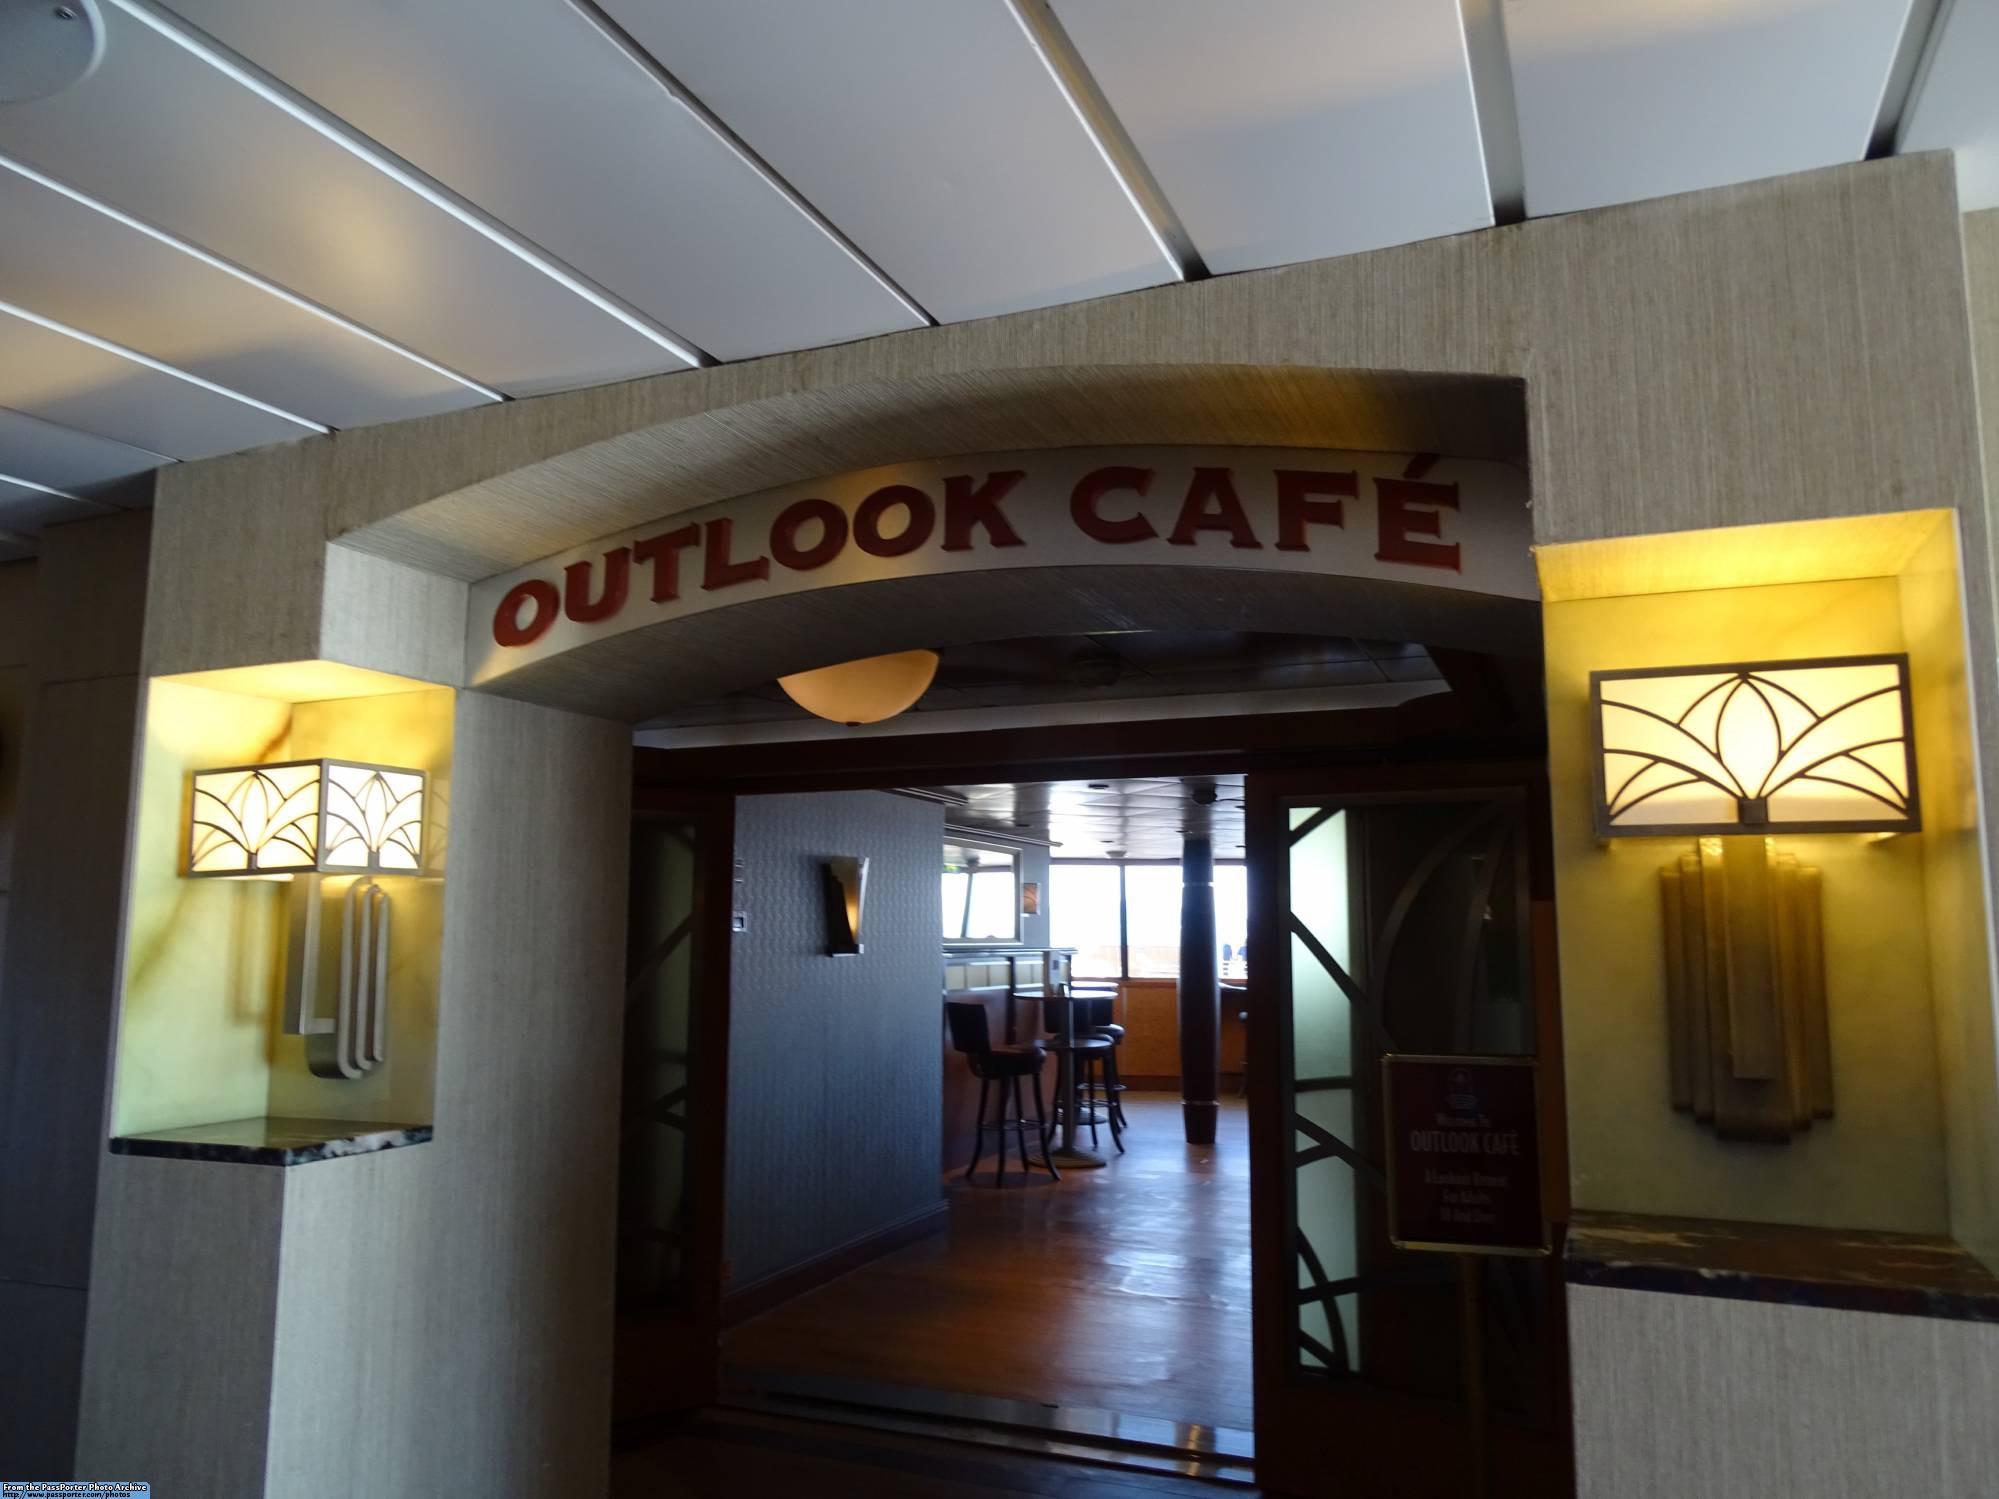 Disney Wonder - Outlook Cafe